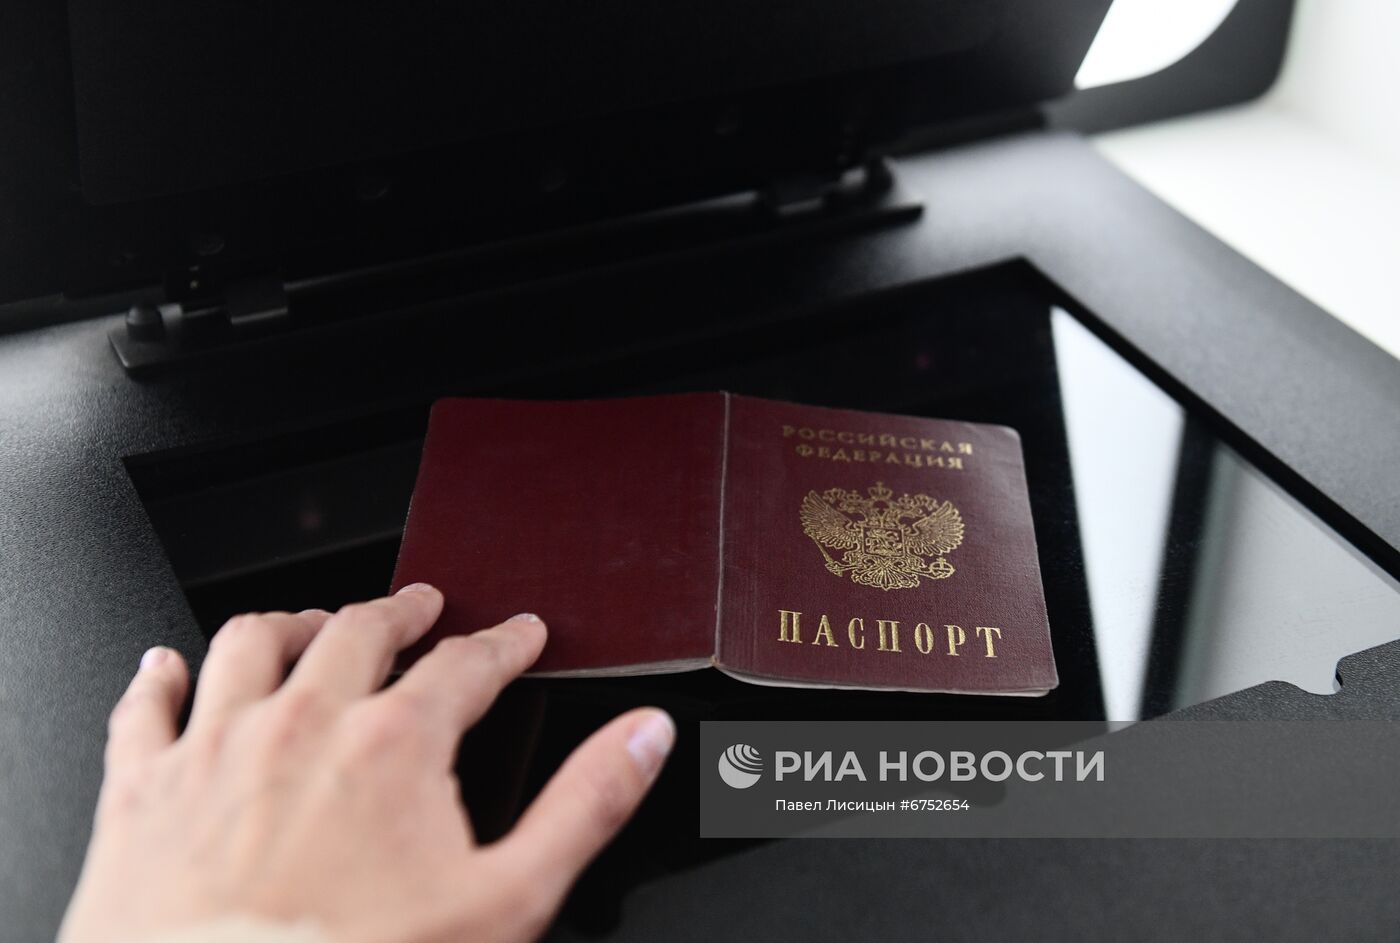 Работа криптобиокабины для оформления загранпаспортов в Екатеринбурге